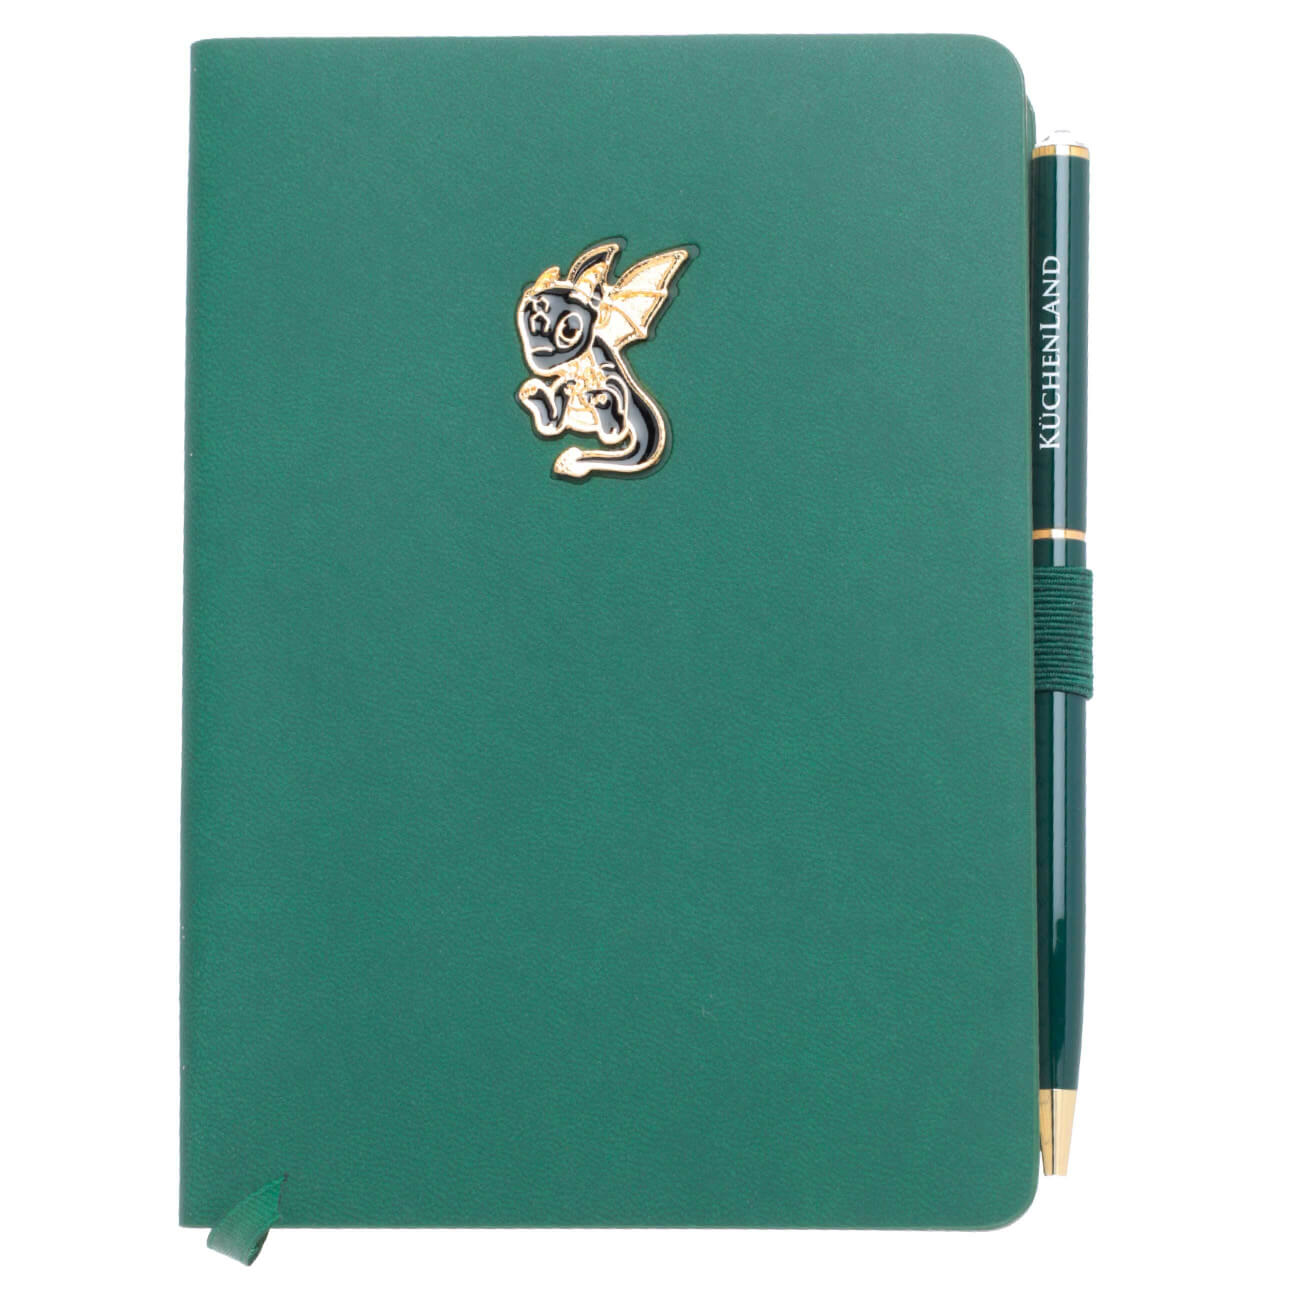 Блокнот для записей, 15х11 см, с ручкой, полиуретан, зеленый, Дракон с крыльями, Dragon spyro eloise блокнот a5